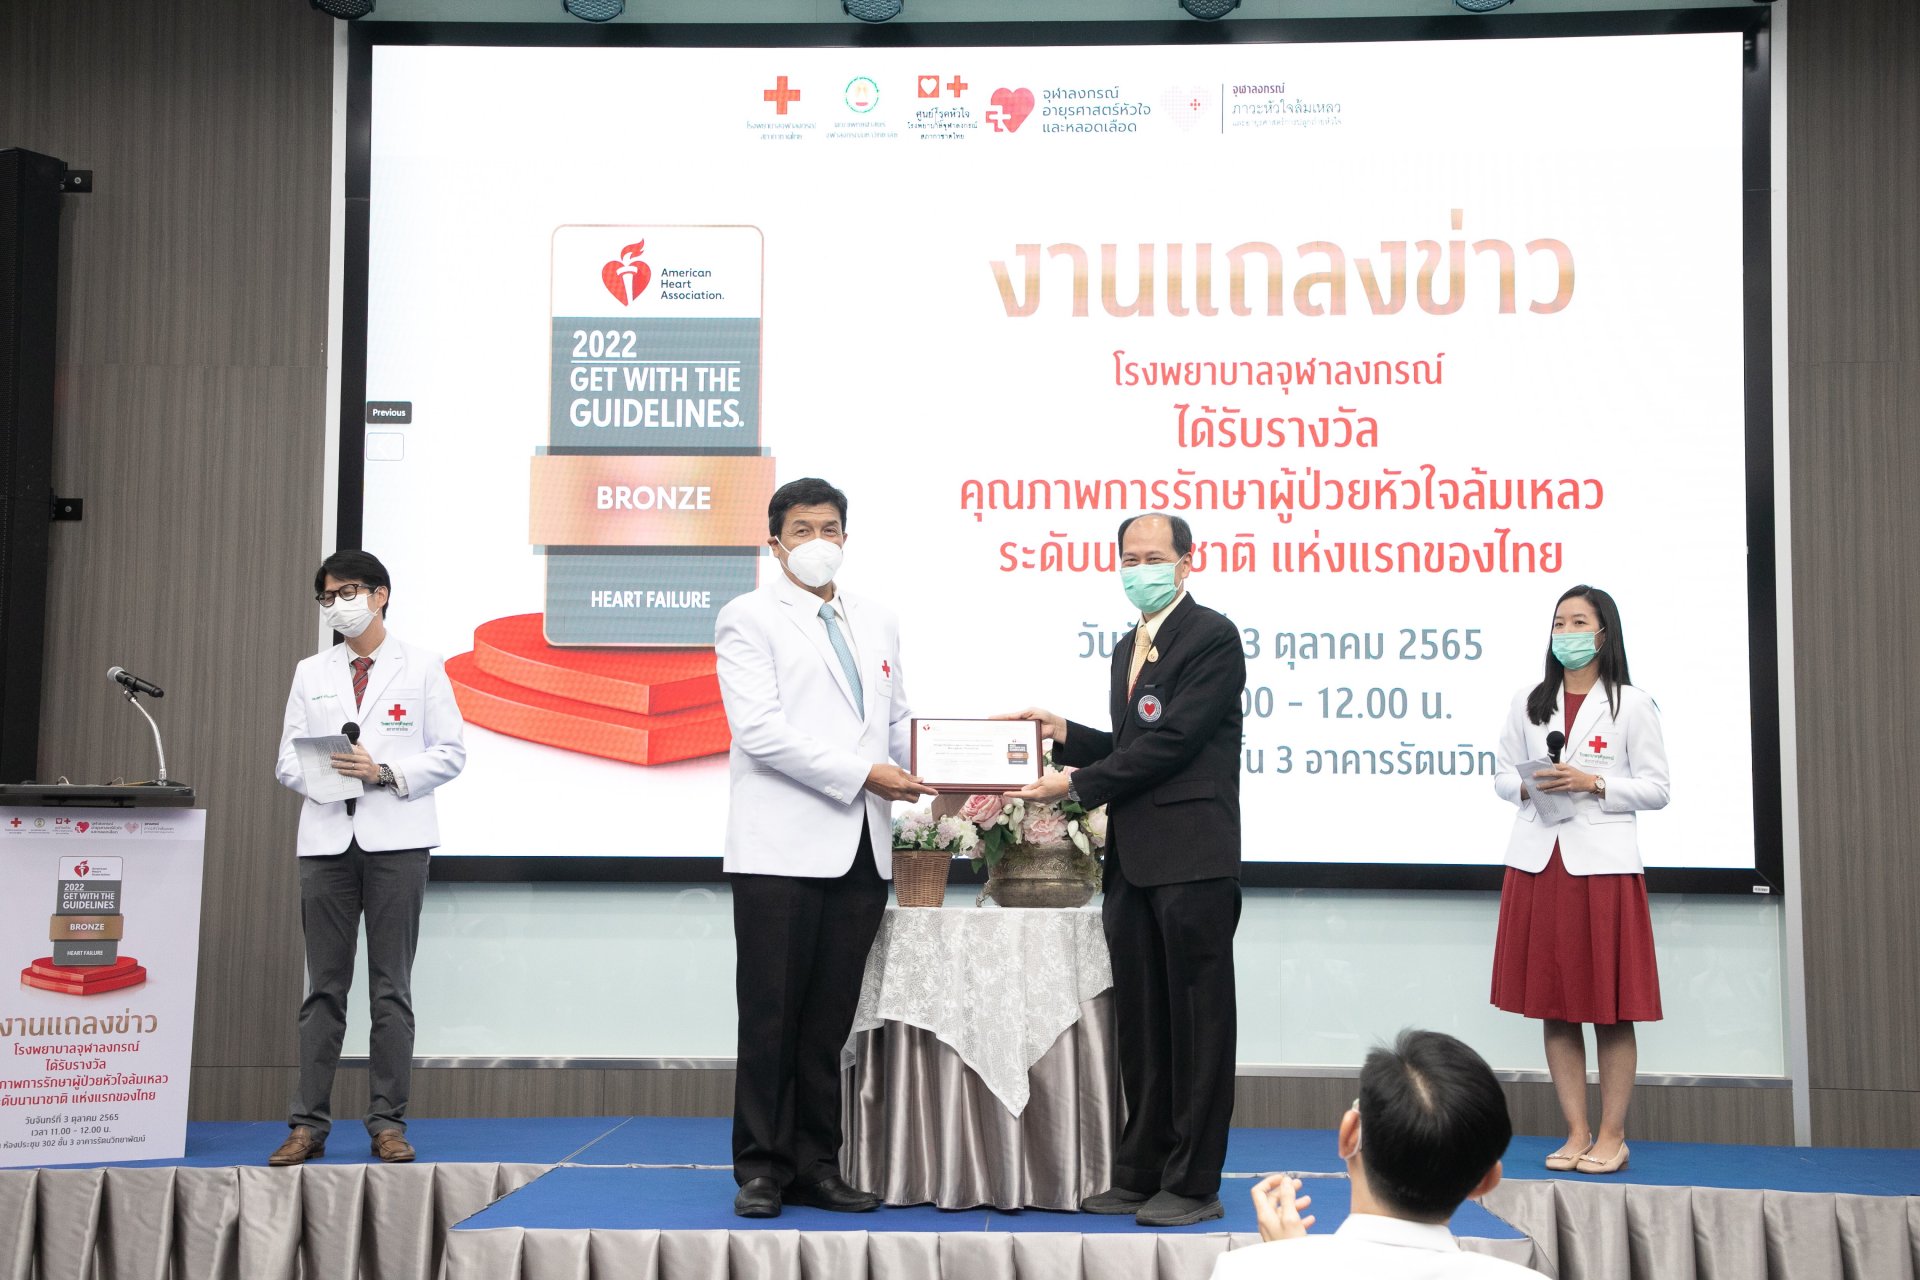 รพ.จุฬาลงกรณ์ ได้รับรางวัลคุณภาพการรักษาผู้ป่วยหัวใจล้มเหลว ระดับนานาชาติ แห่งแรกของไทย